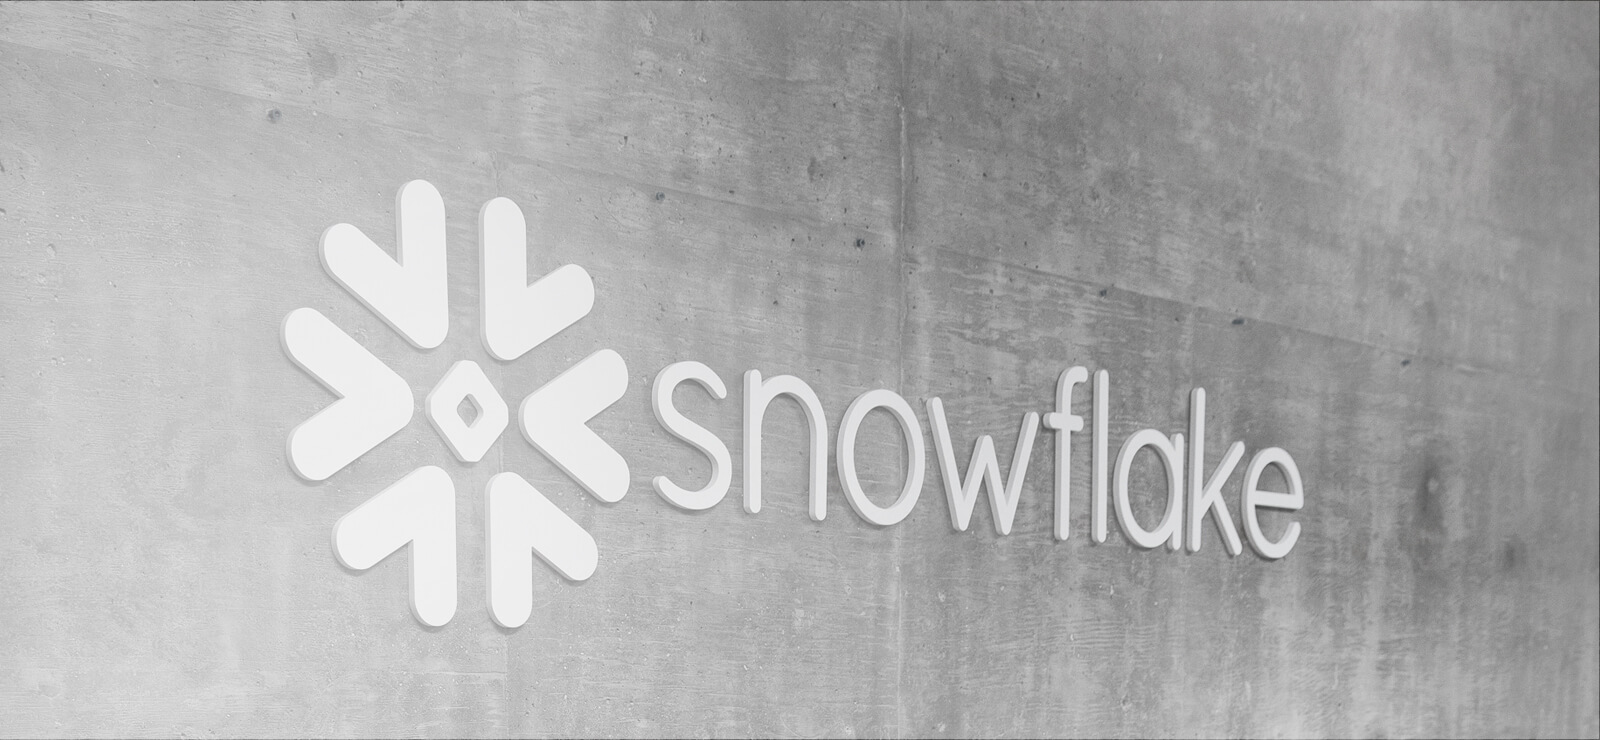 Snowflake Achieves AWS Retail Competency Status